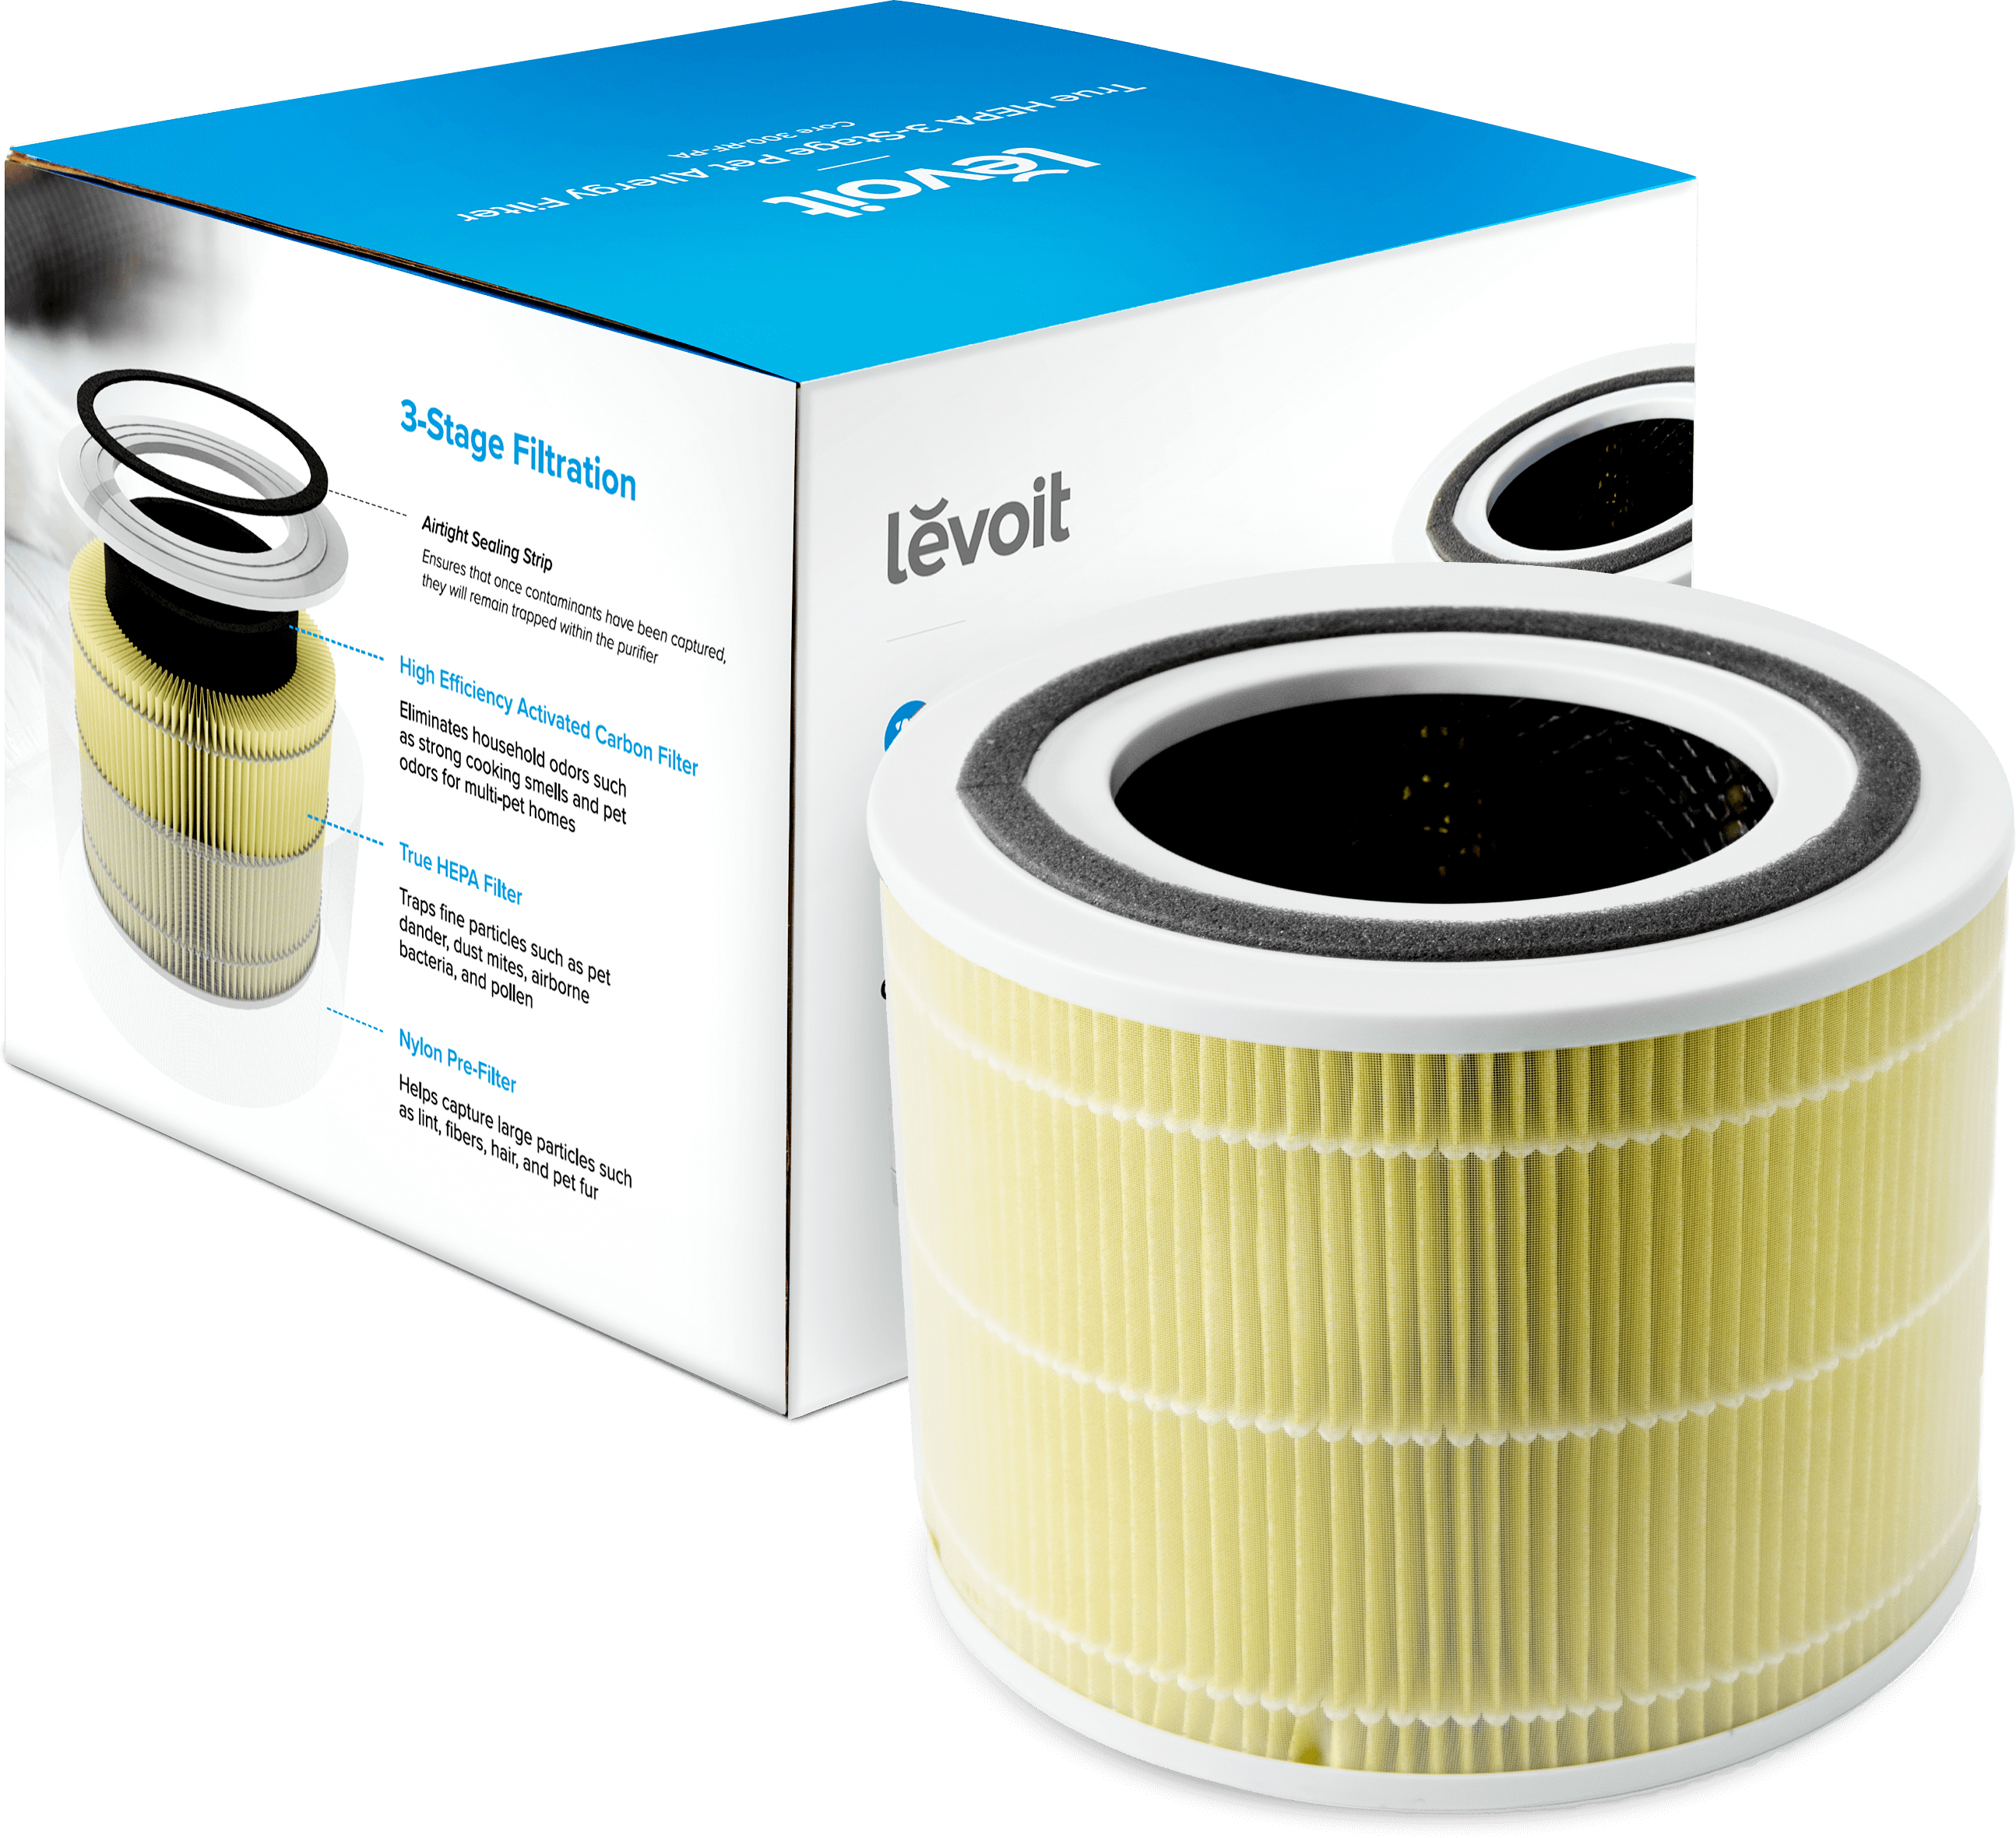 Фильтр для увлажнителя воздуха Levoit Air Cleaner Filter Core 300 True HEPA 3-Stage (Original Pet Allergy Filter) в интернет-магазине, главное фото